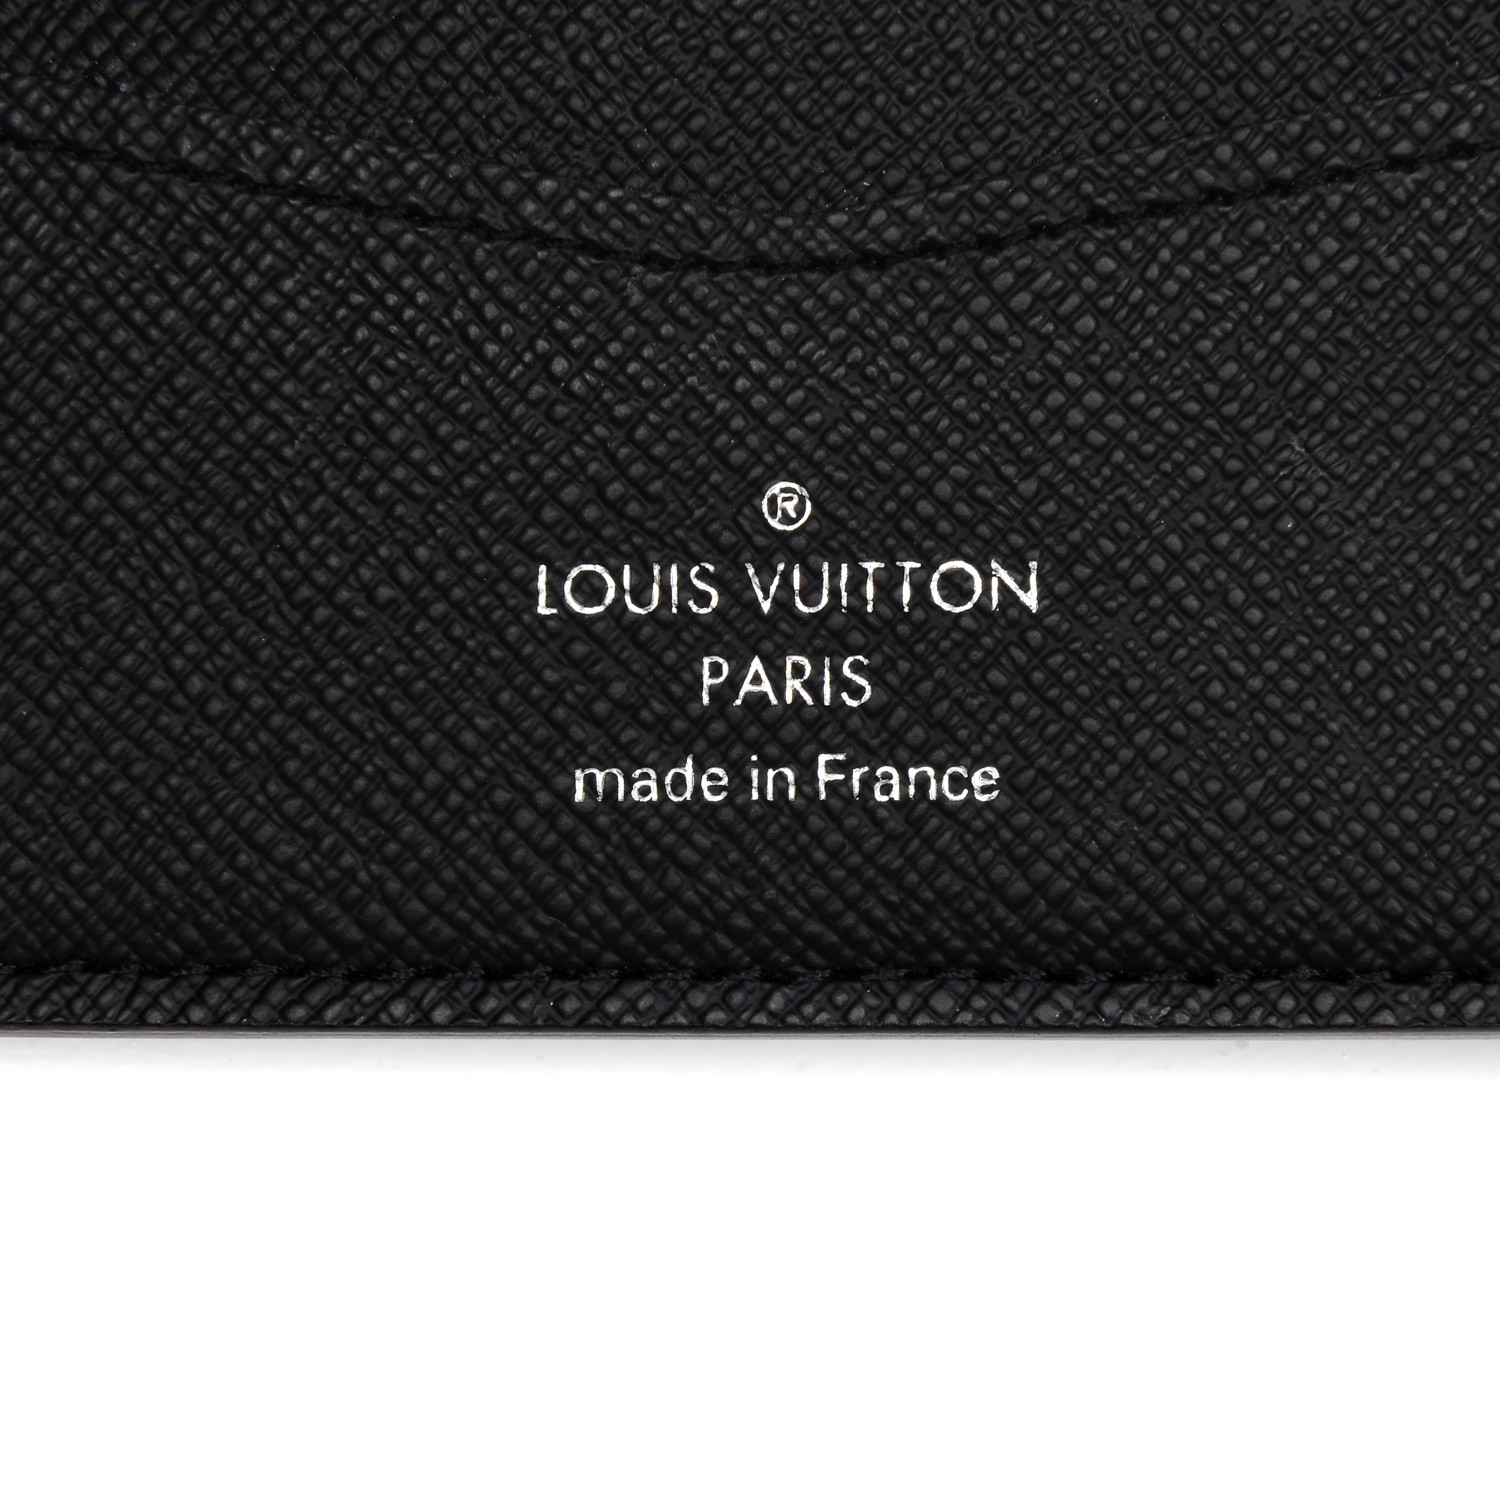 Shop Louis Vuitton SLENDER Slender wallet (N63261, N64033) by